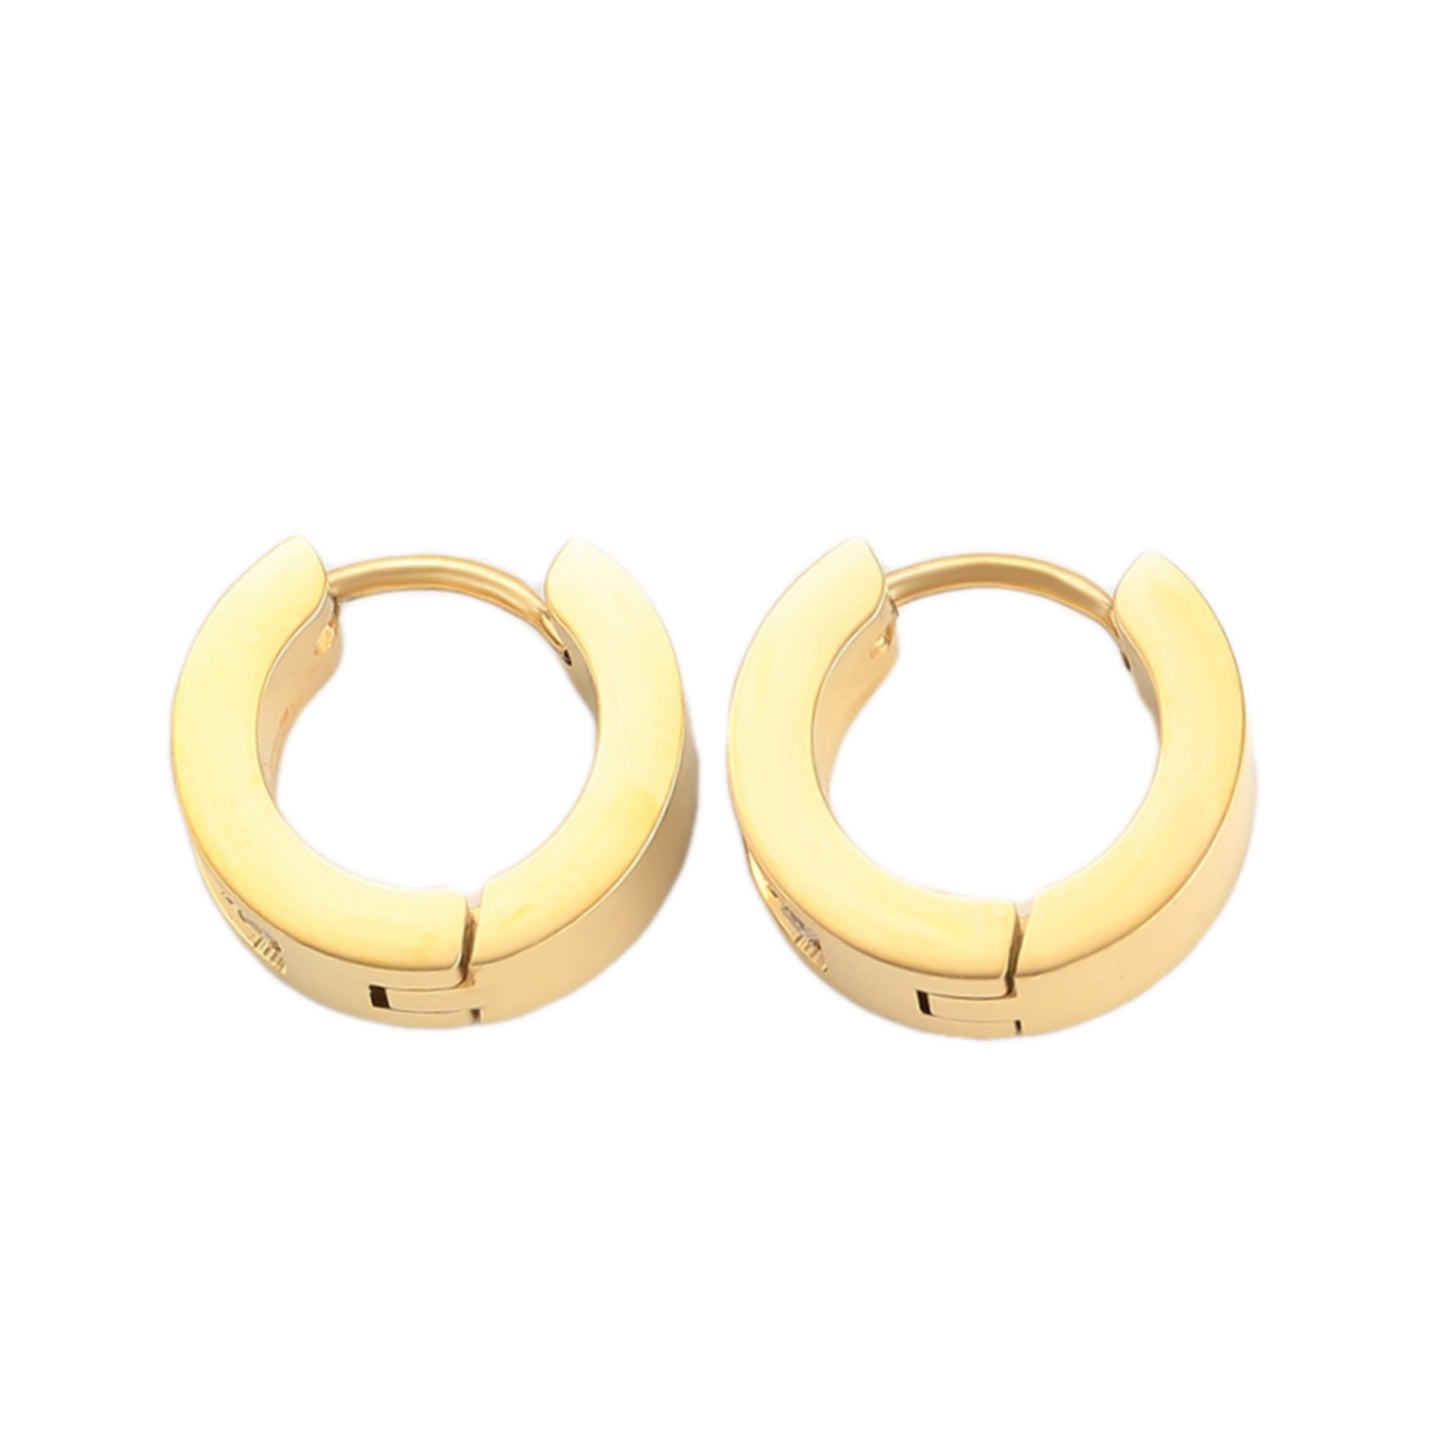 13mm x 4mm Surgical Steel CZ Hoop Earrings - HK Jewels